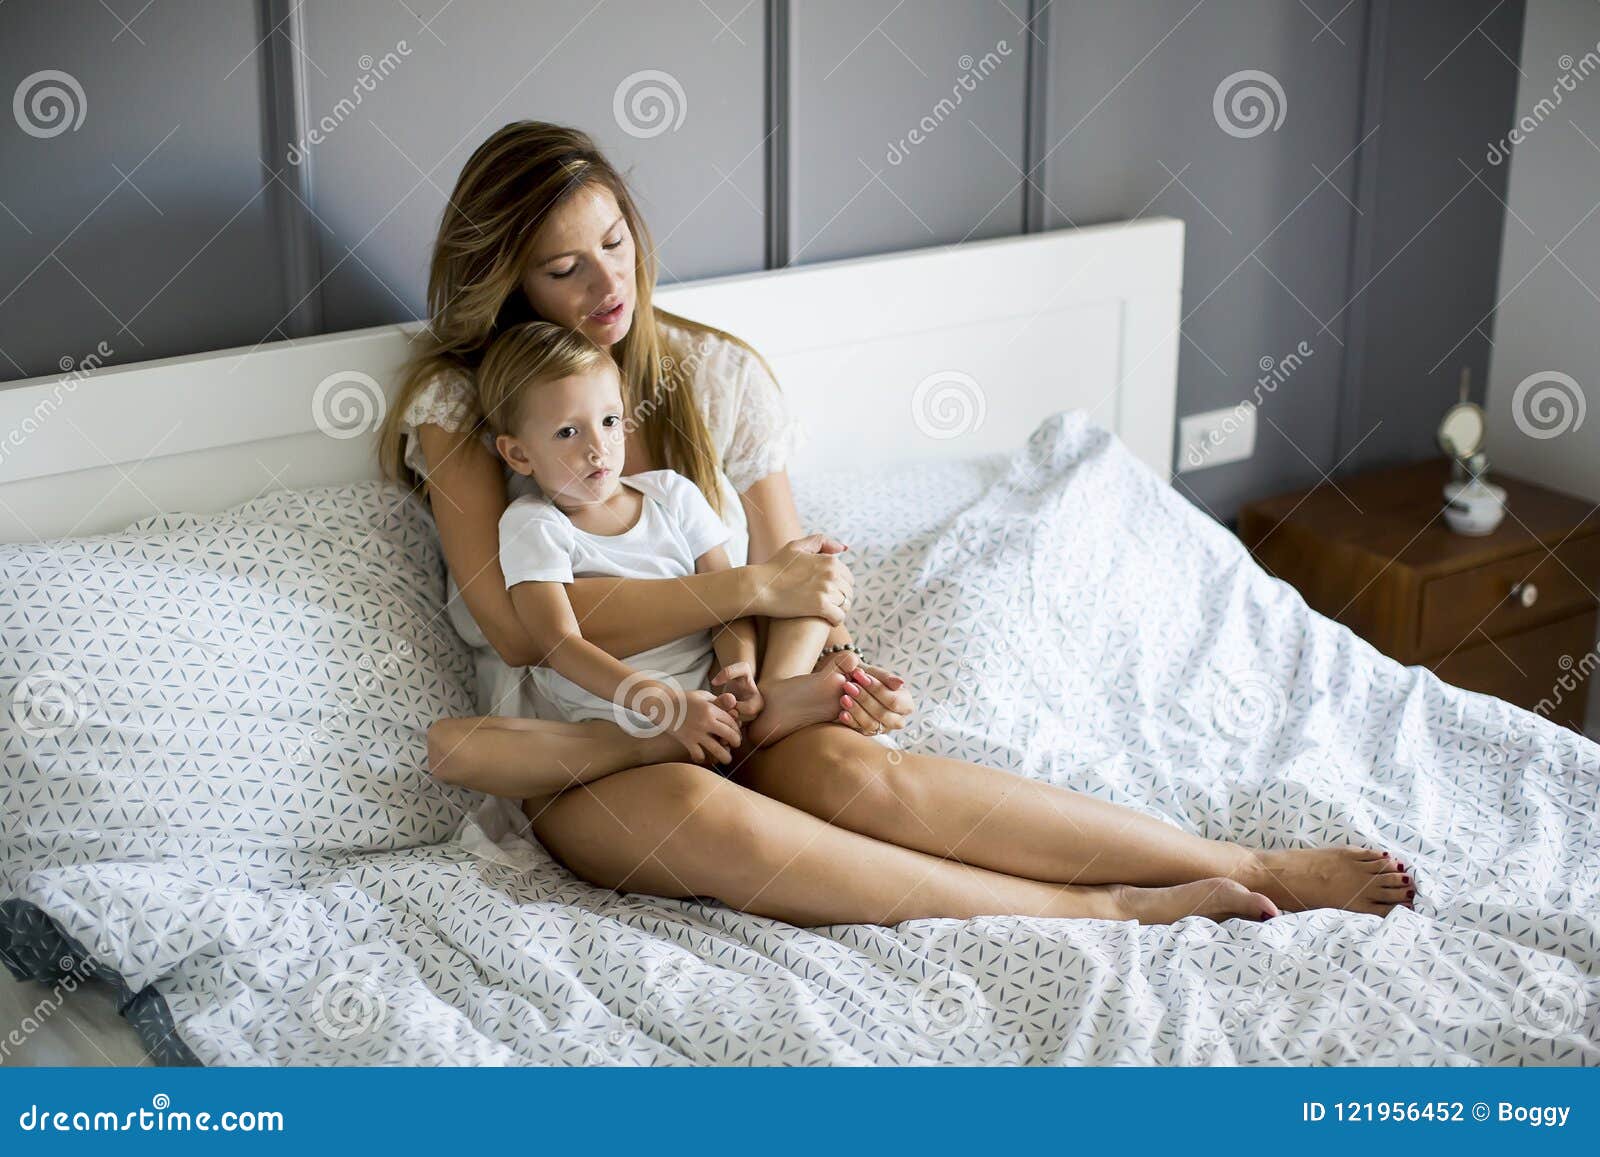 С ее мамой в постели. Молодые мамочки в постели. Фотосессия мама с сыном в постели. Молодая мама в постели. Сынишка с мамашей в постели.